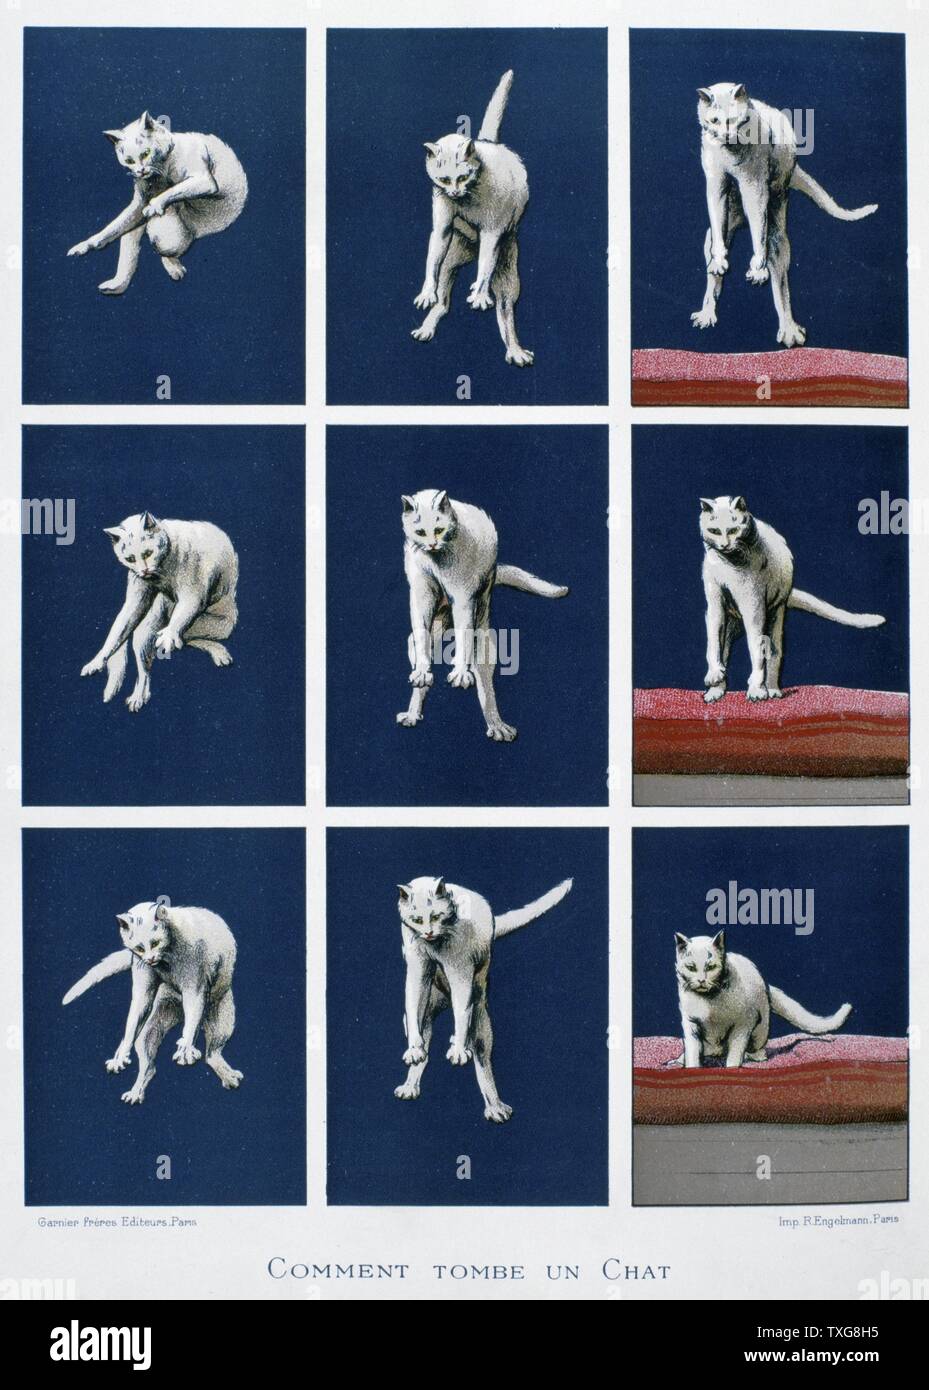 Serie di fotogrammi di un gatto che rientrano la cinematografia da Muybridge e Marey per studiare la locomozione di animali da 'Les dernieres merveilles de la science" (le ultime meraviglie della scienza) - Parigi Foto Stock